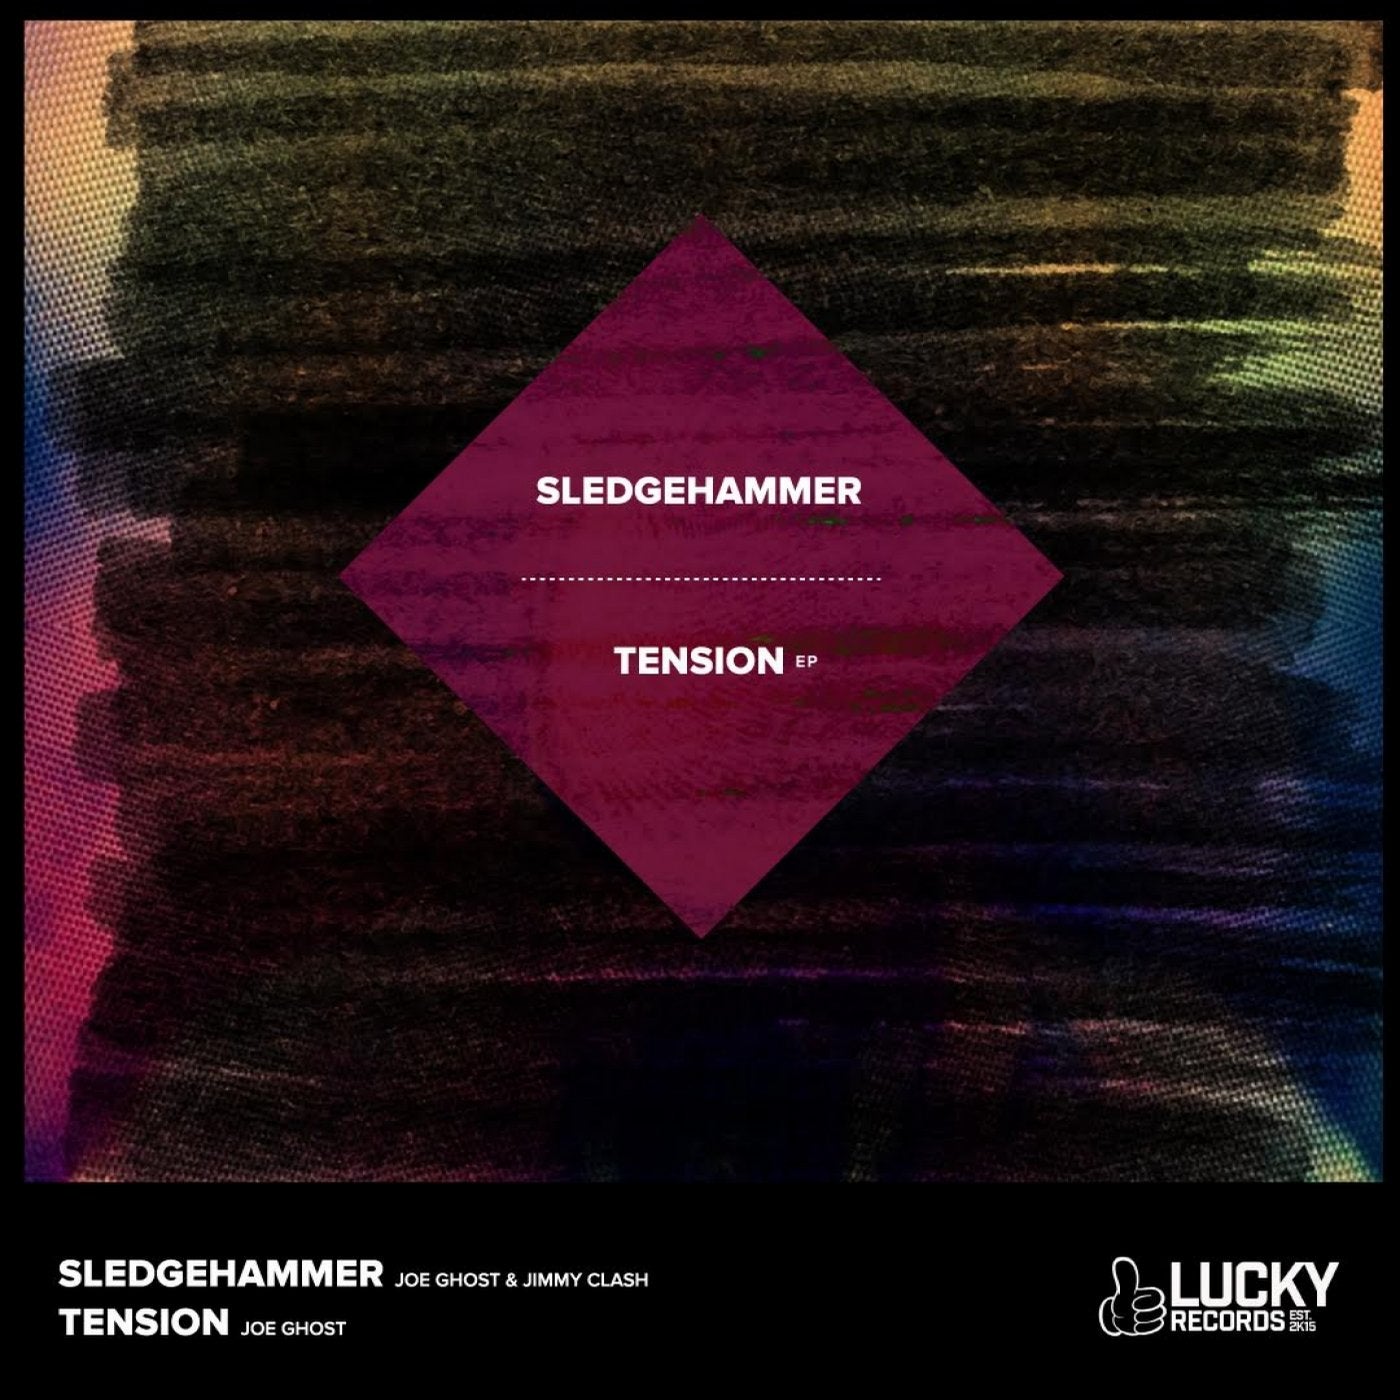 Sledgehammer/Tension